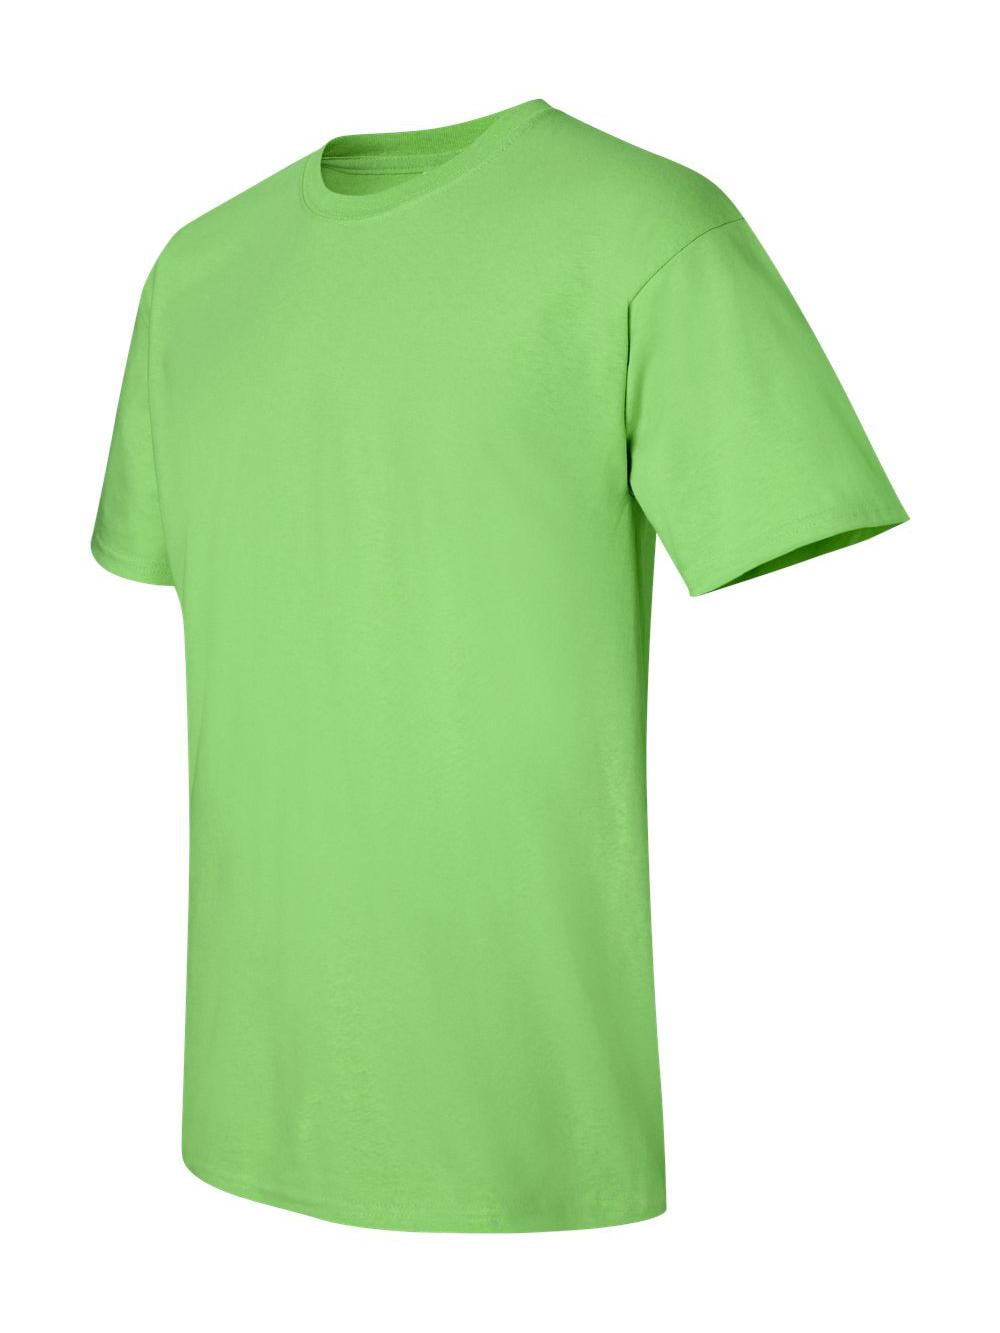 Gildan - Ultra Cotton T-Shirt - 2000 - Honey - Size: M 